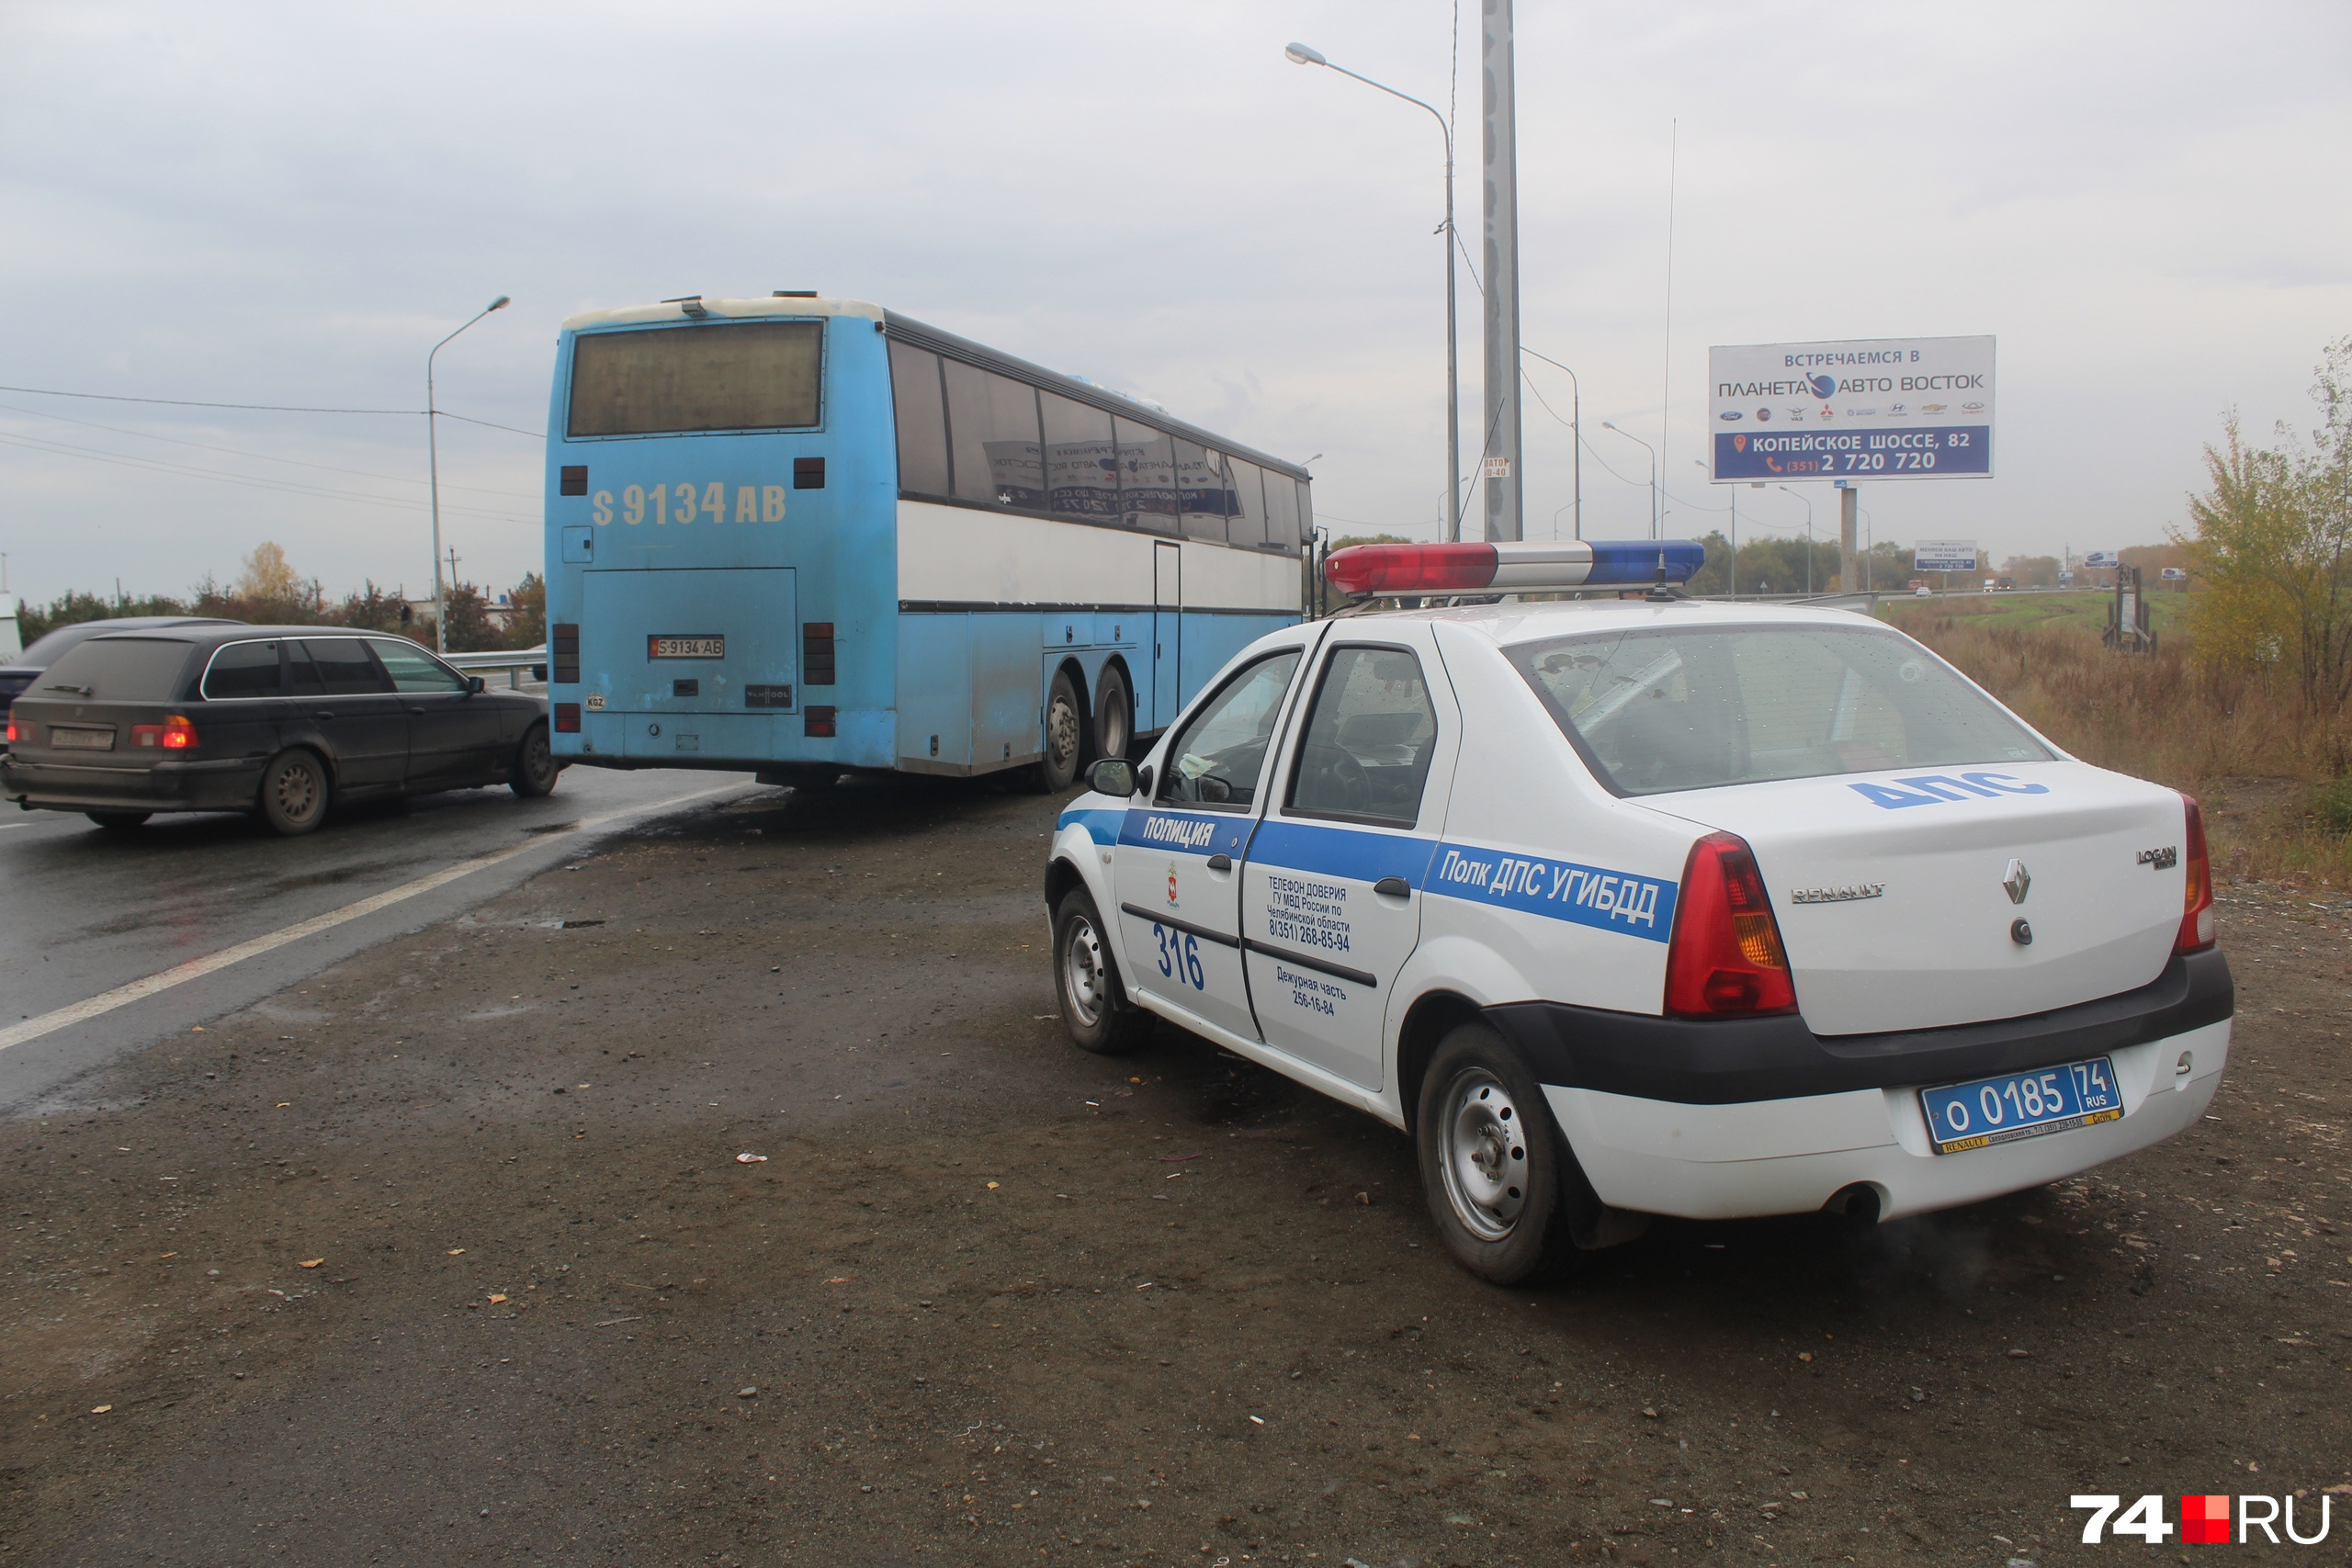 Пассажиров автобуса проверят на легальность нахождения в России